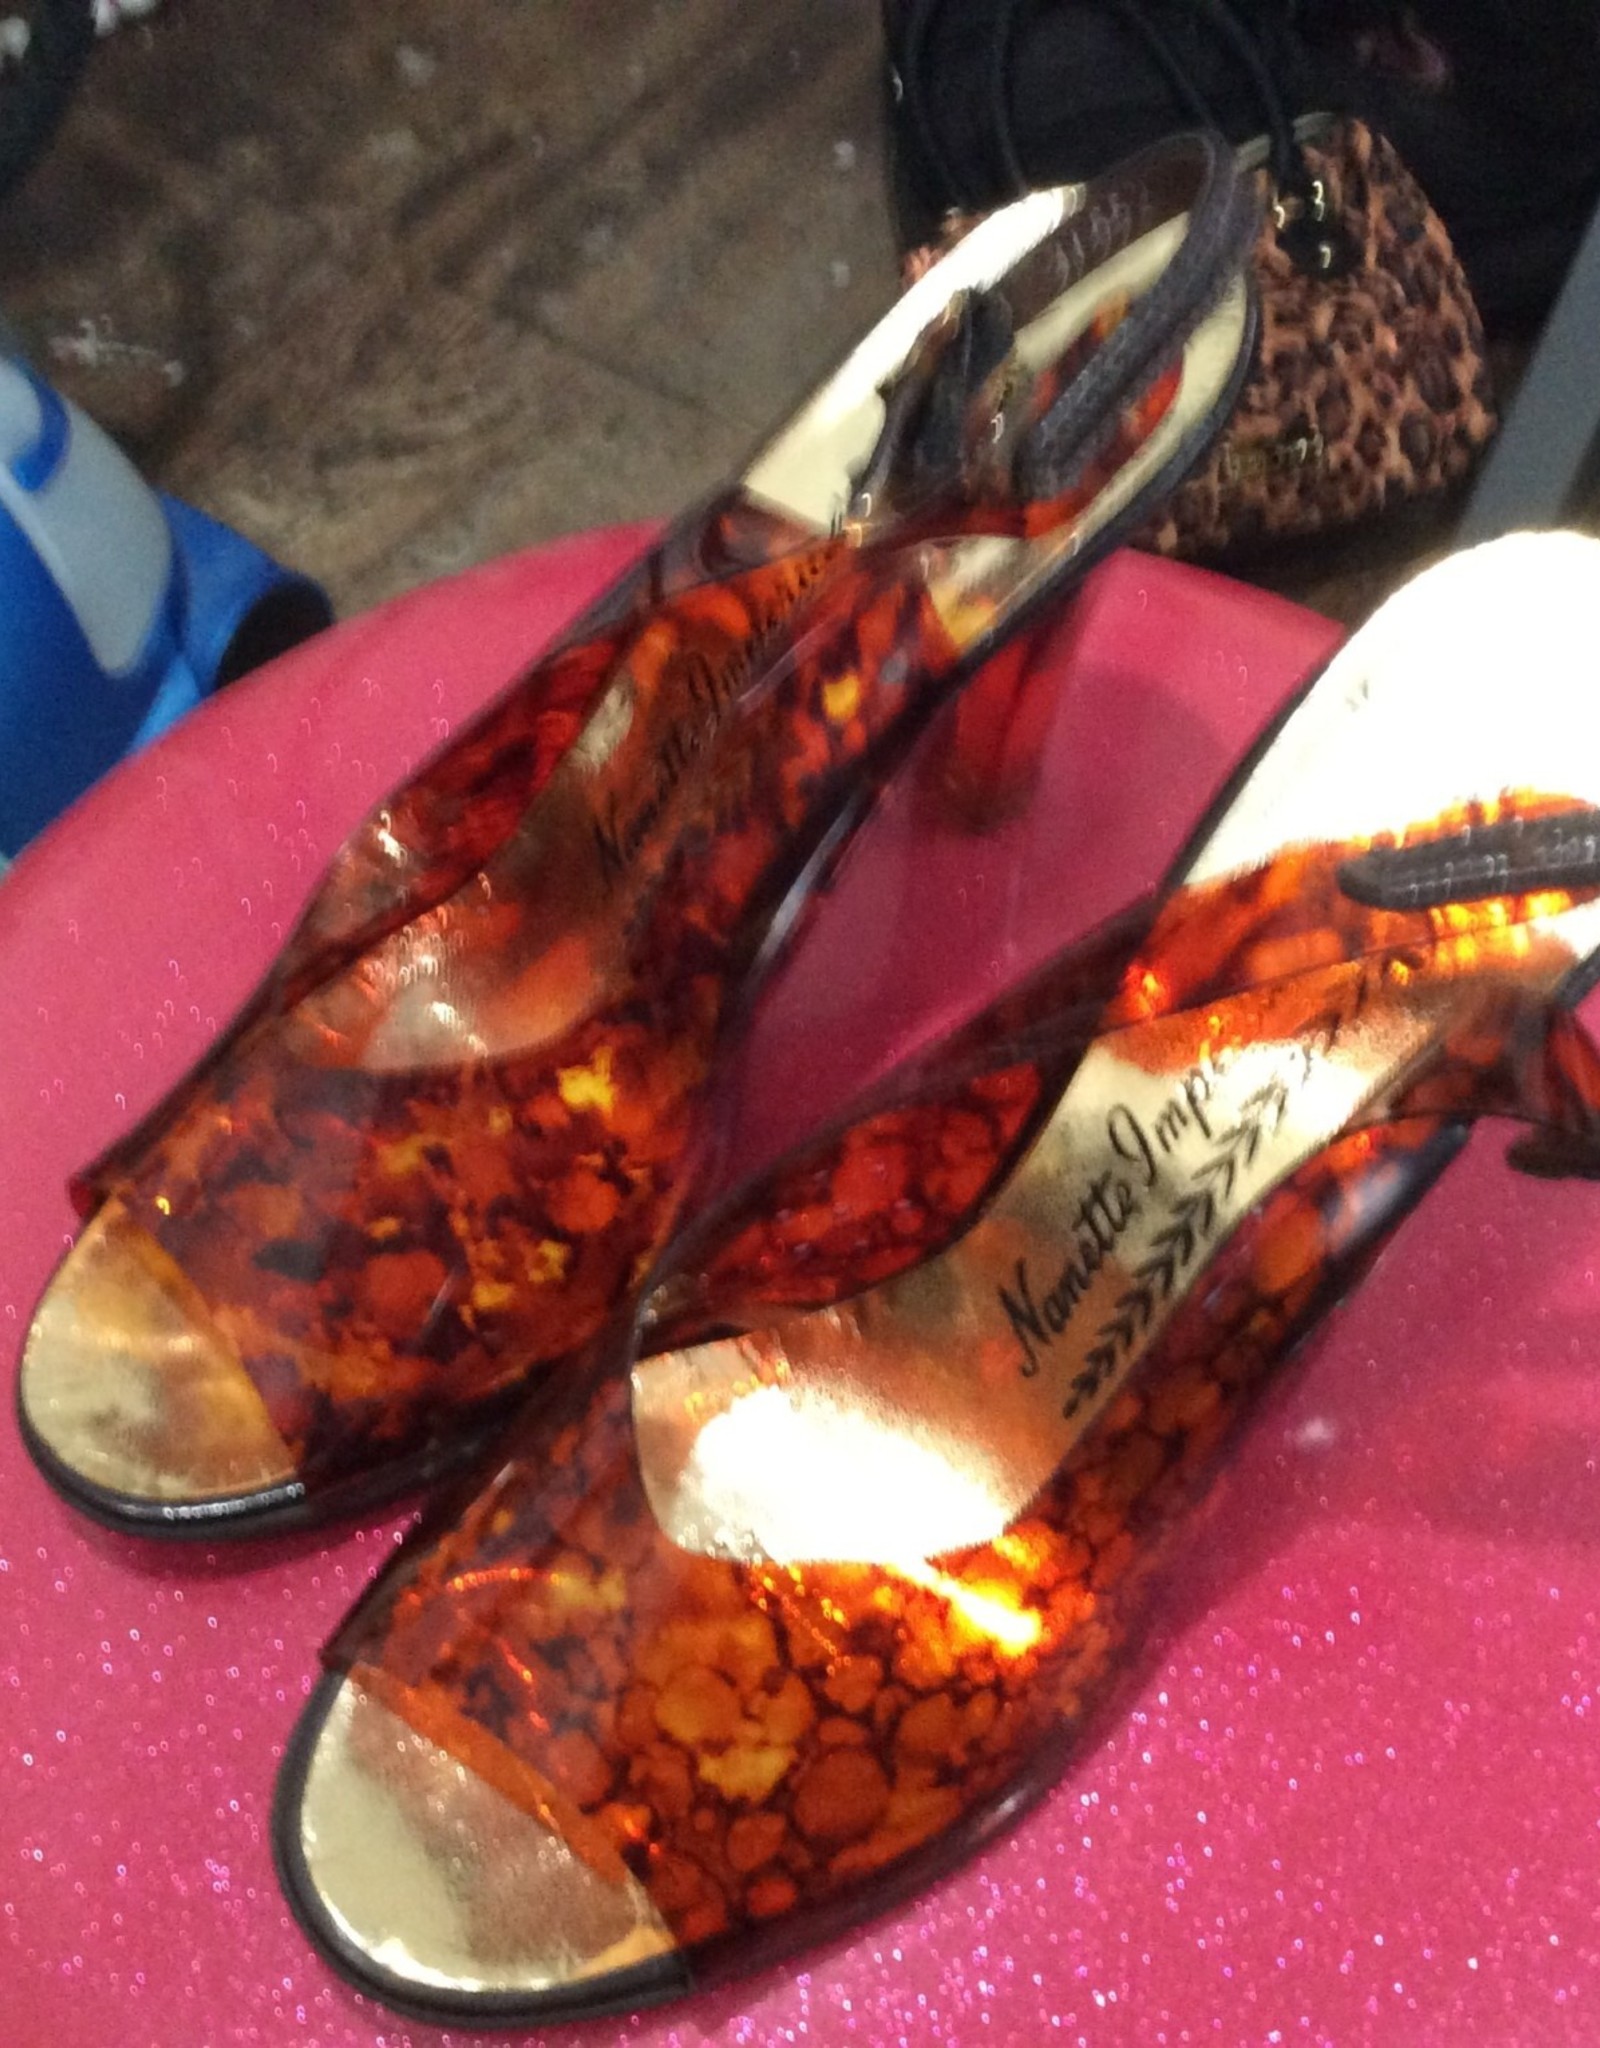 Nanette Imperials 60s/70s amber plastic heels sz 7.5